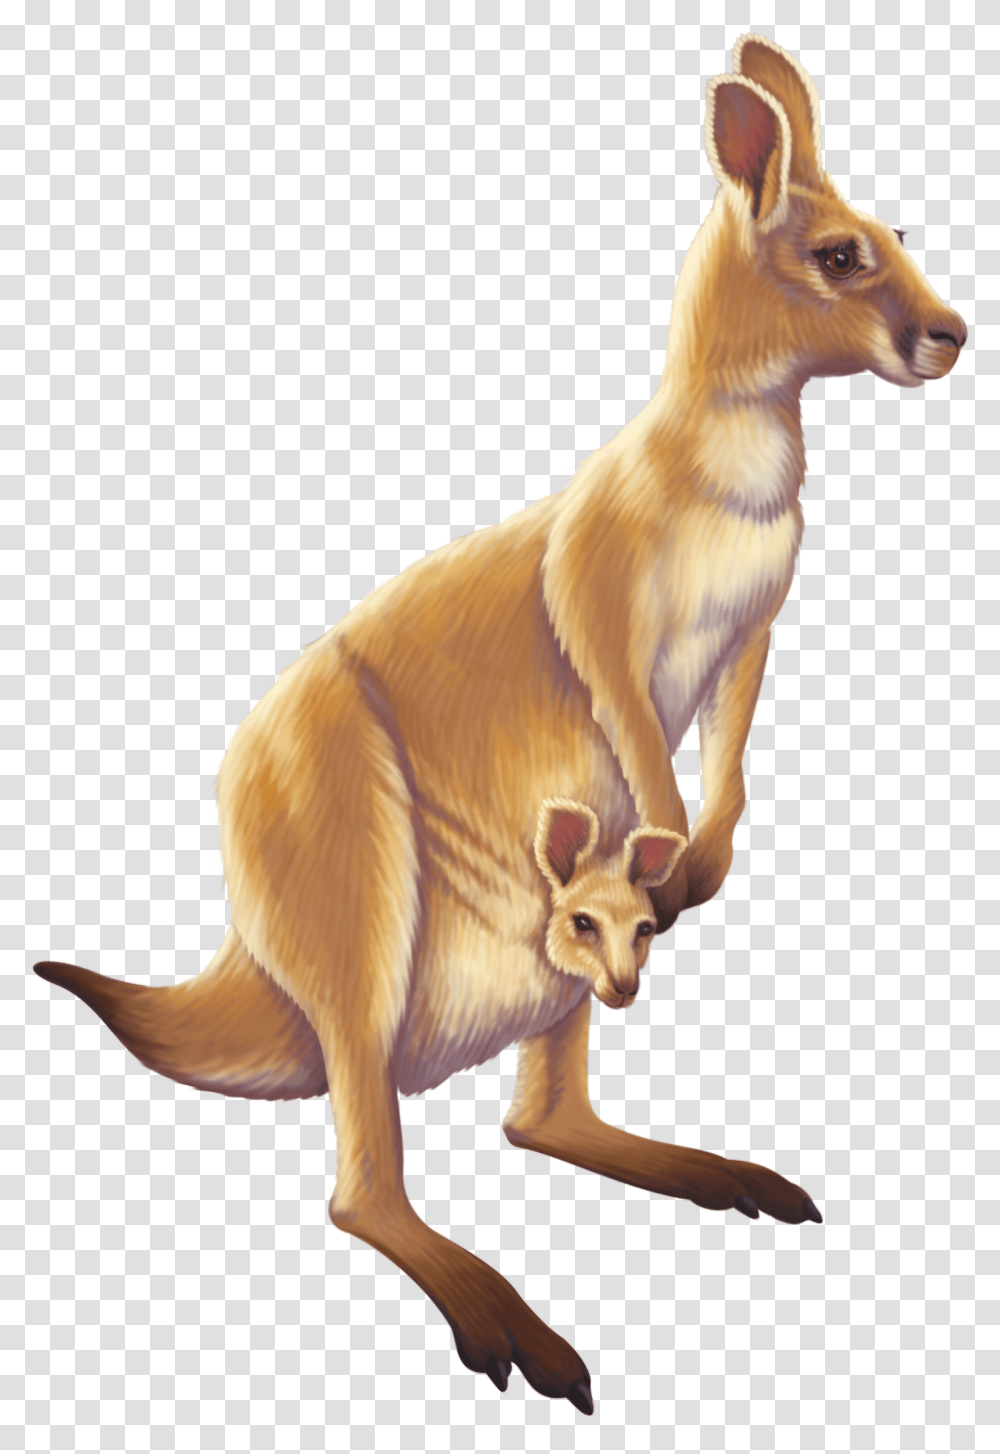 Kangaroo Australia Animal Free Image Hd Kangaroo, Mammal, Wallaby, Dog, Pet Transparent Png